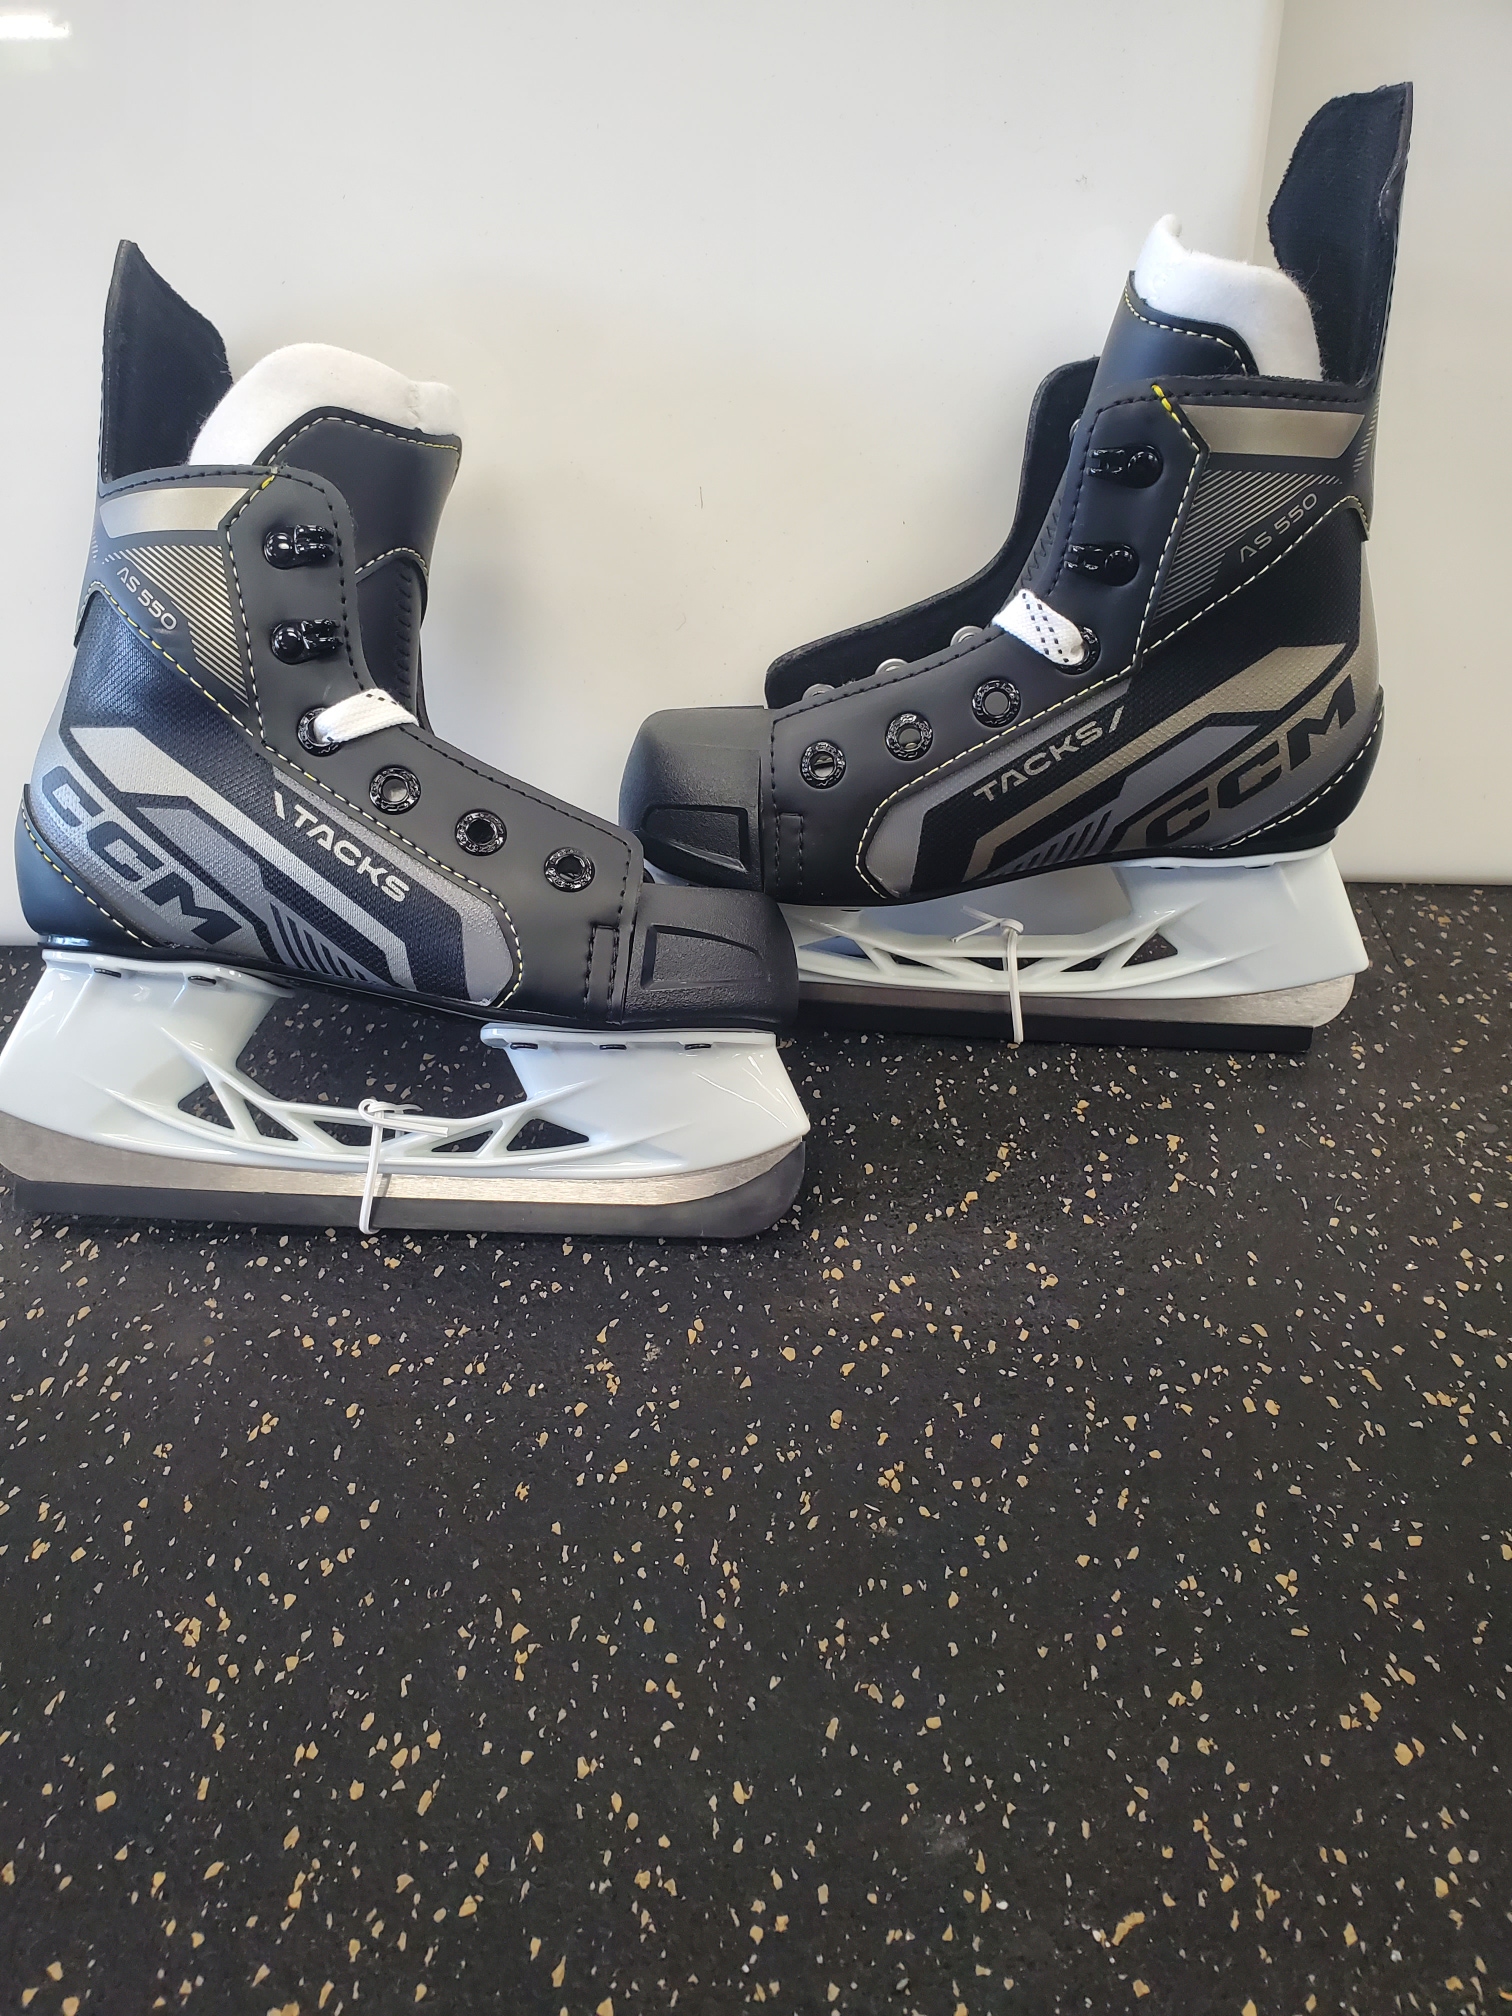 Youth New CCM Tacks AS-550 Hockey Skates Size 9